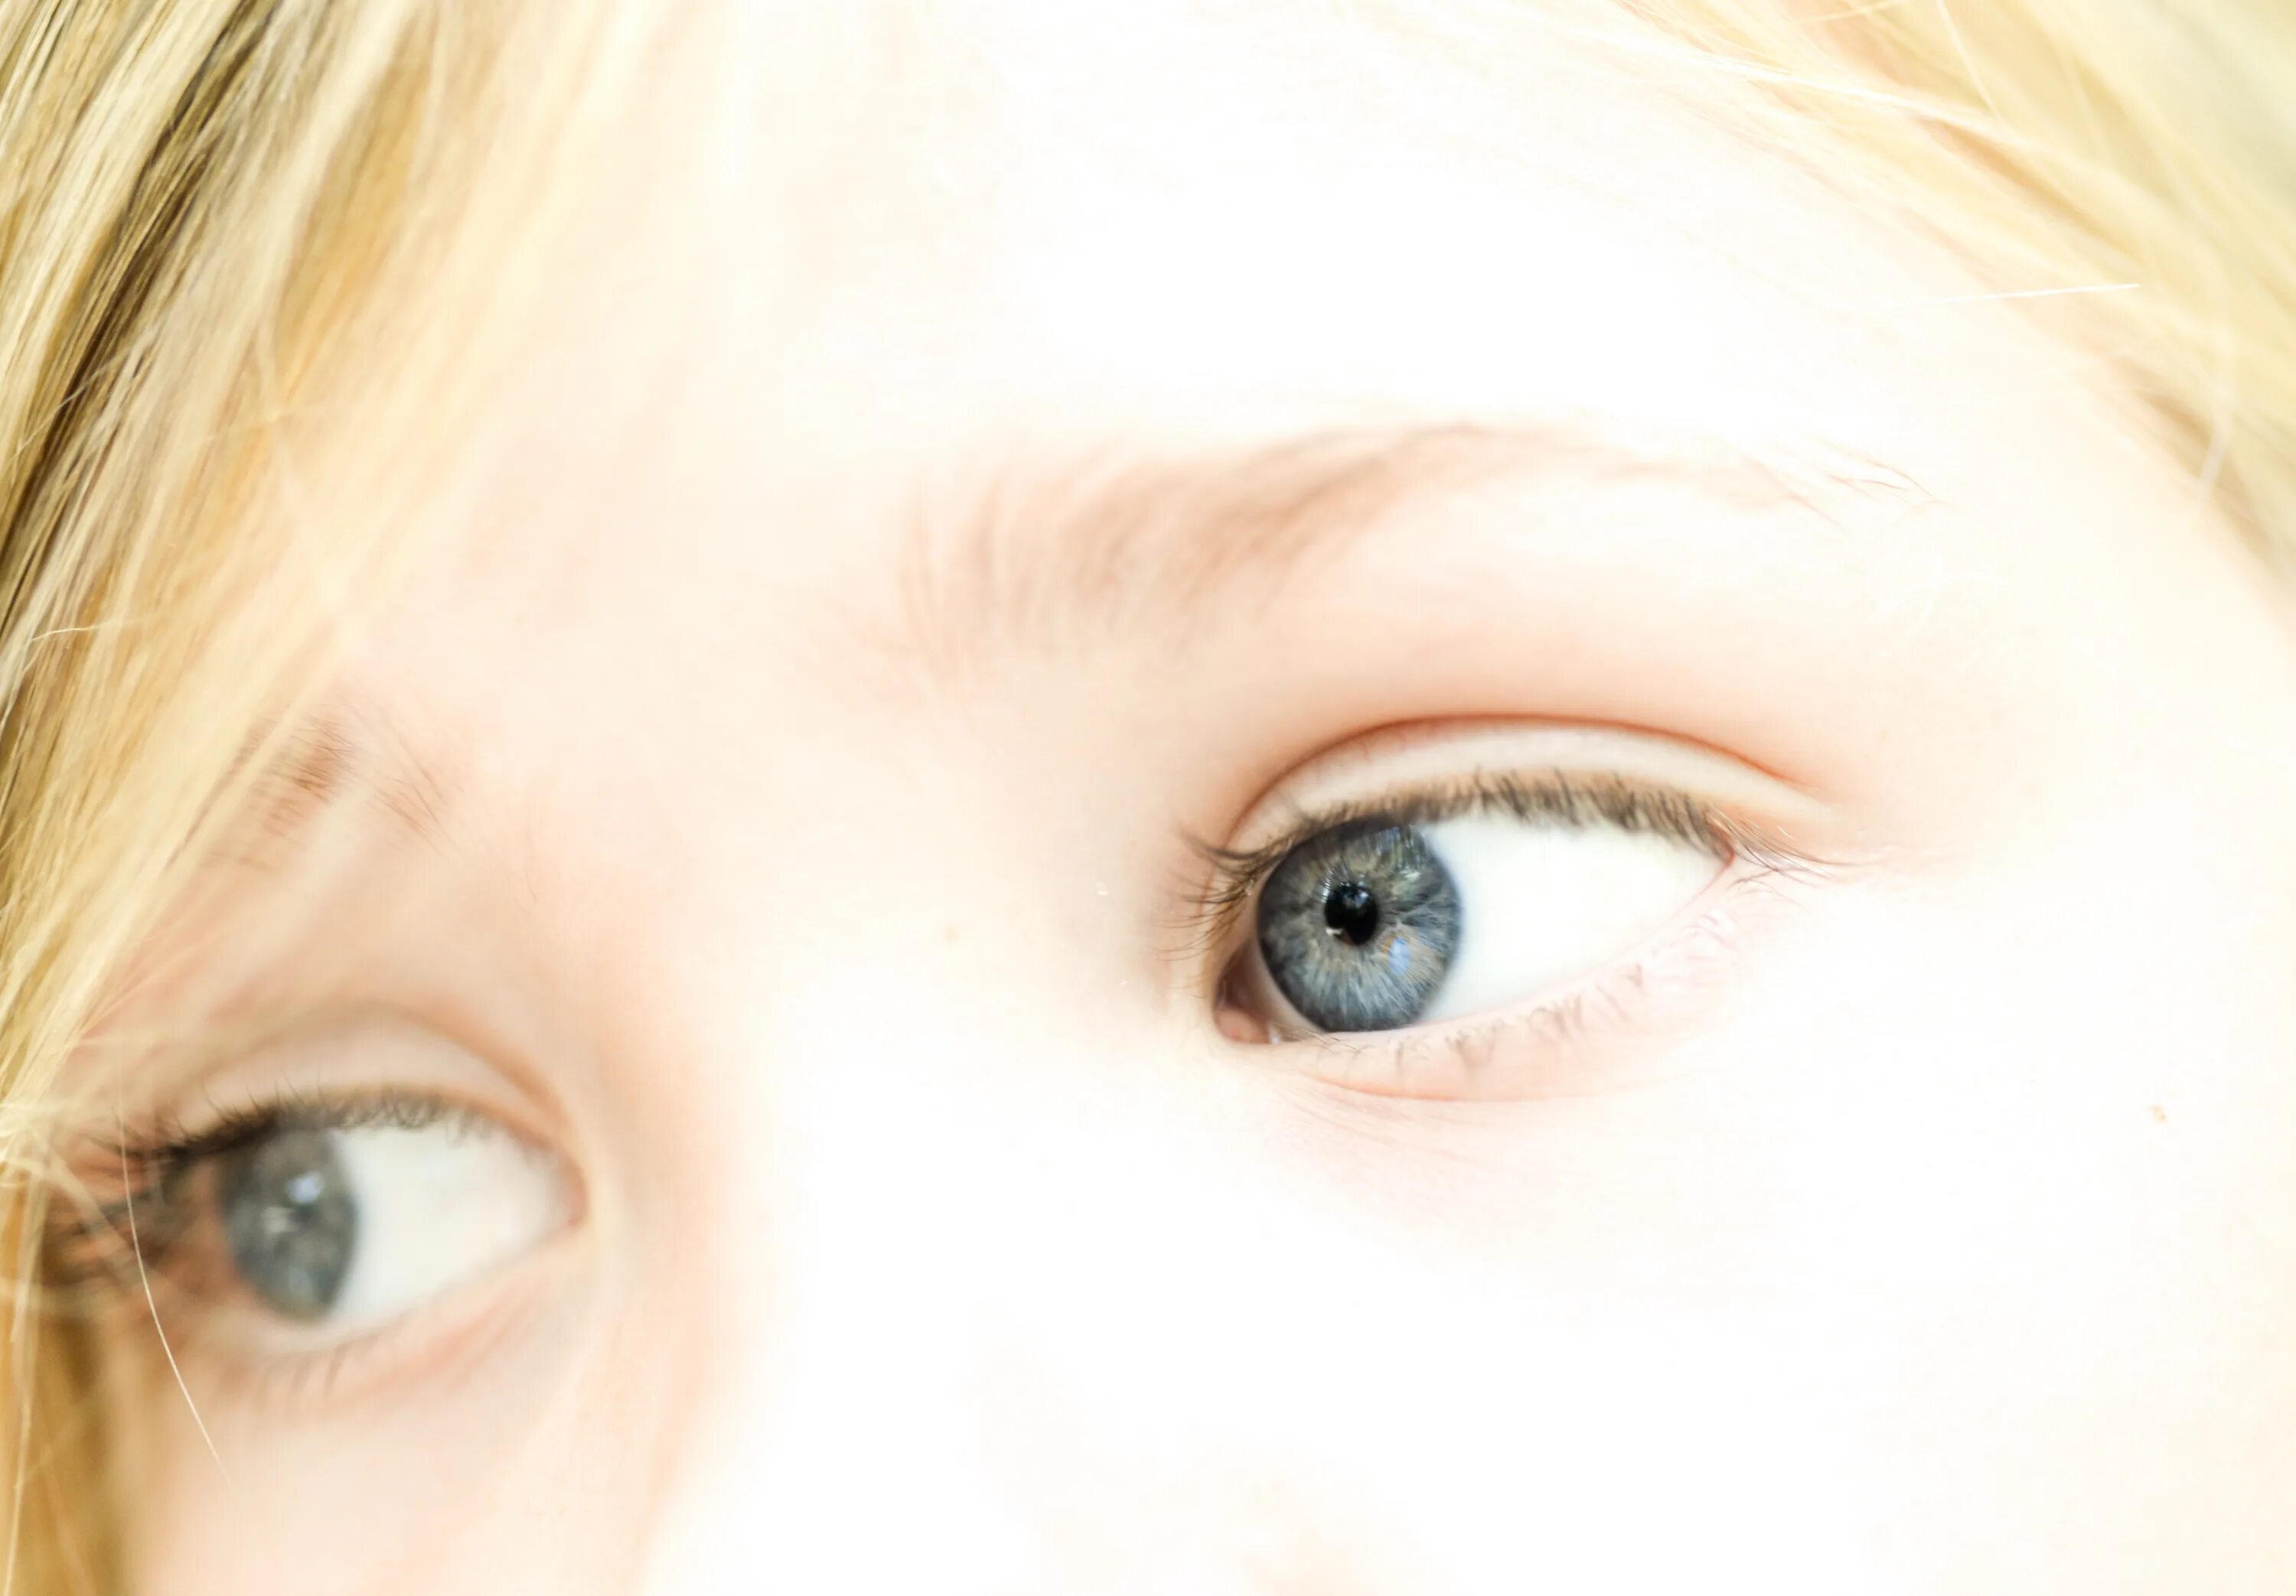 Детские глаза. Здоровые глаза дети. Глаза ребенка крупным планом. Глаза детей фото. Включи глаза детей